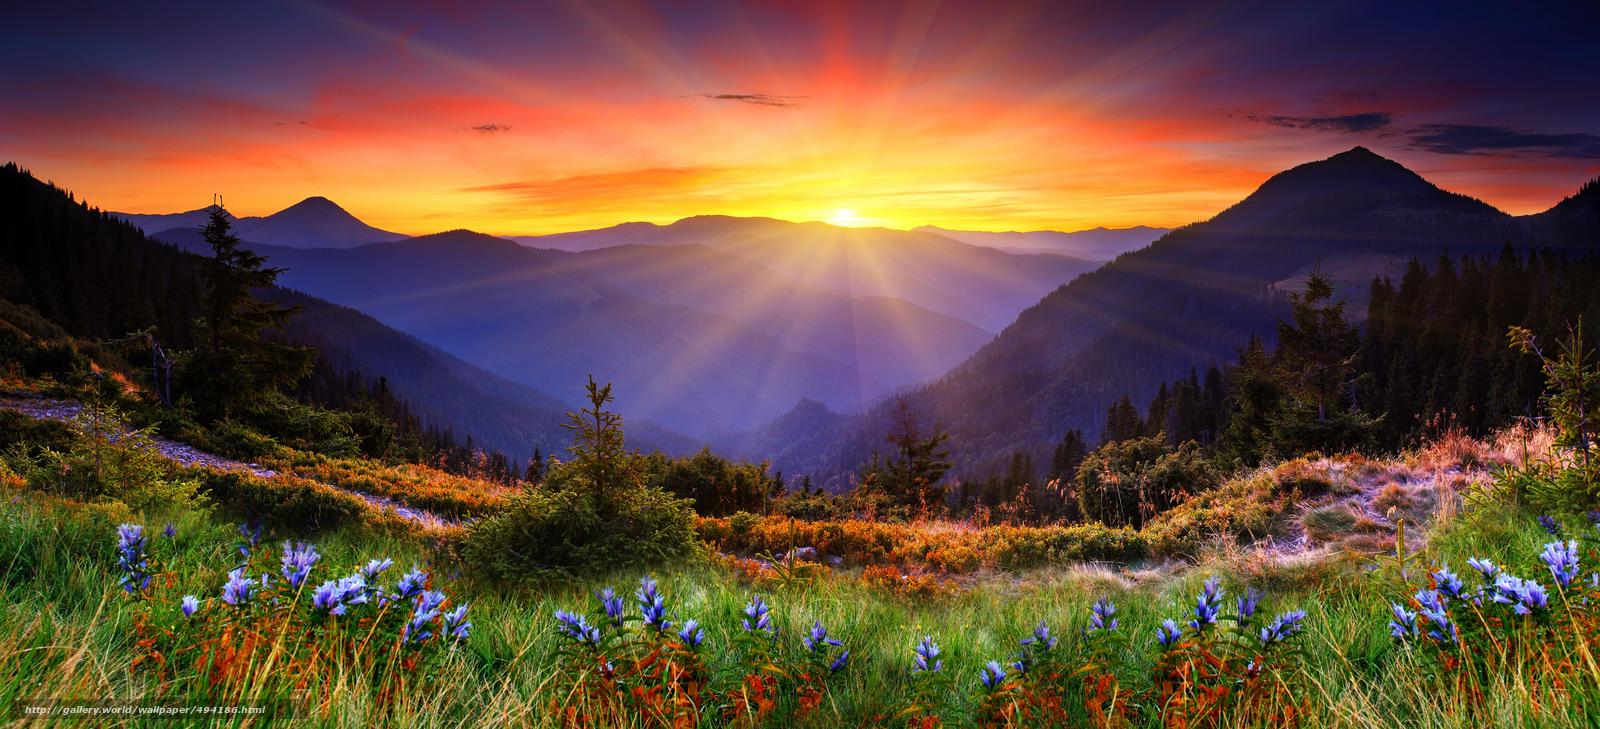 Wallpaper Mountains Sunset Sun Landscape Desktop